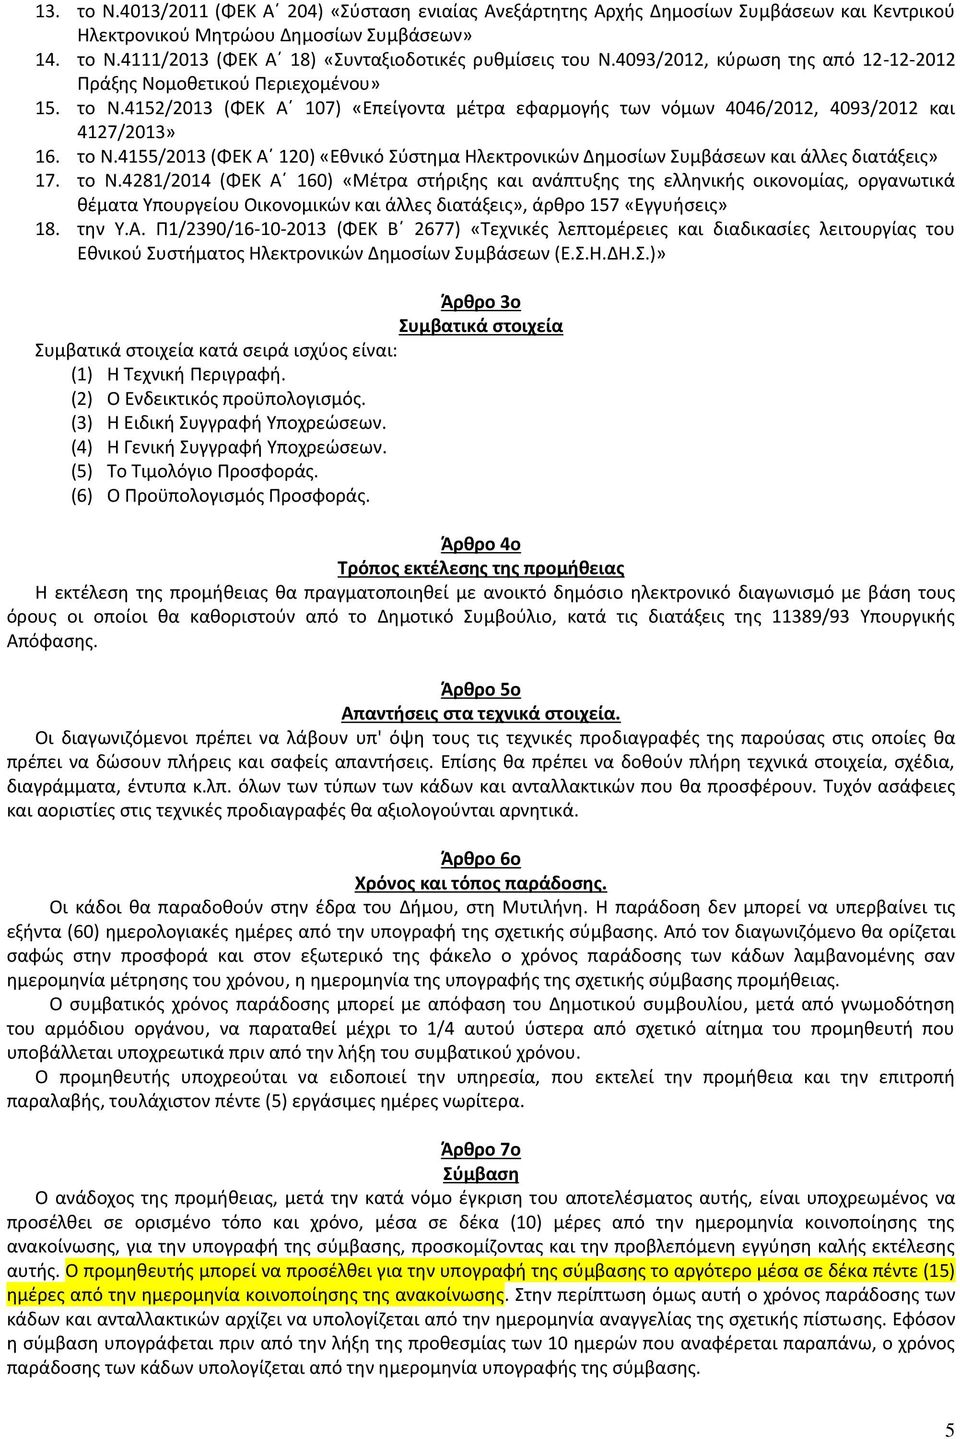 το Ν.4281/2014 (ΦΕΚ Α 160) «Μέτρα στήριξης και ανάπτυξης της ελληνικής οικονομίας, οργανωτικά θέματα Υπουργείου Οικονομικών και άλλες διατάξεις», άρθρο 157 «Εγγυήσεις» 18. την Υ.Α. Π1/2390/16-10-2013 (ΦΕΚ Β 2677) «Τεχνικές λεπτομέρειες και διαδικασίες λειτουργίας του Εθνικού Συστήματος Ηλεκτρονικών Δημοσίων Συμβάσεων (Ε.